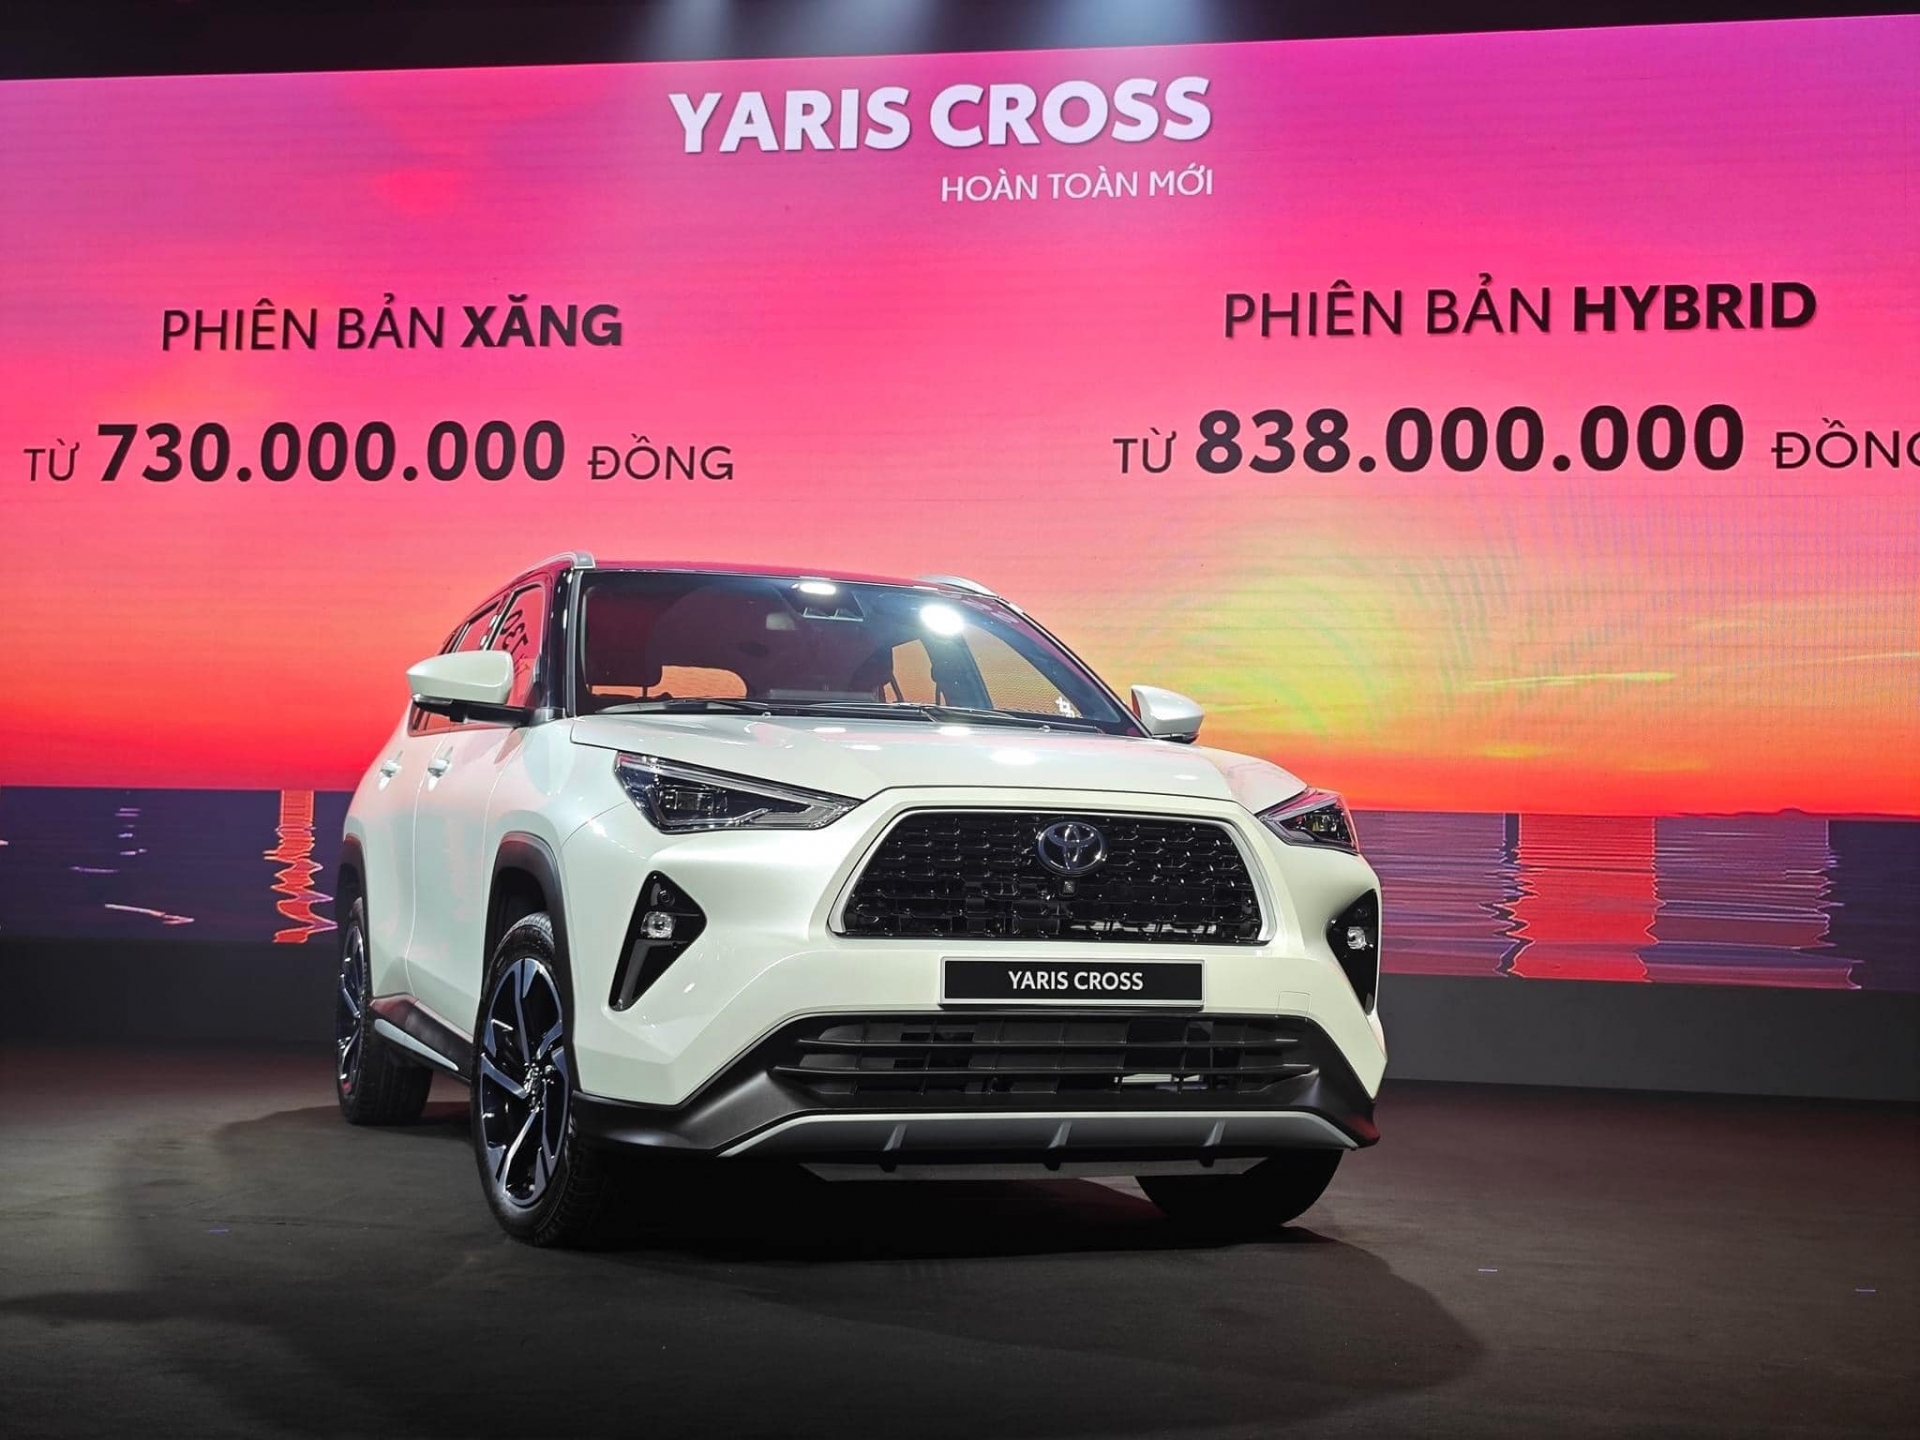 Chênh nhau hơn 100 triệu, hai biến thể của Toyota Yaris Cross vừa ra mắt có gì khác biệt? 328990